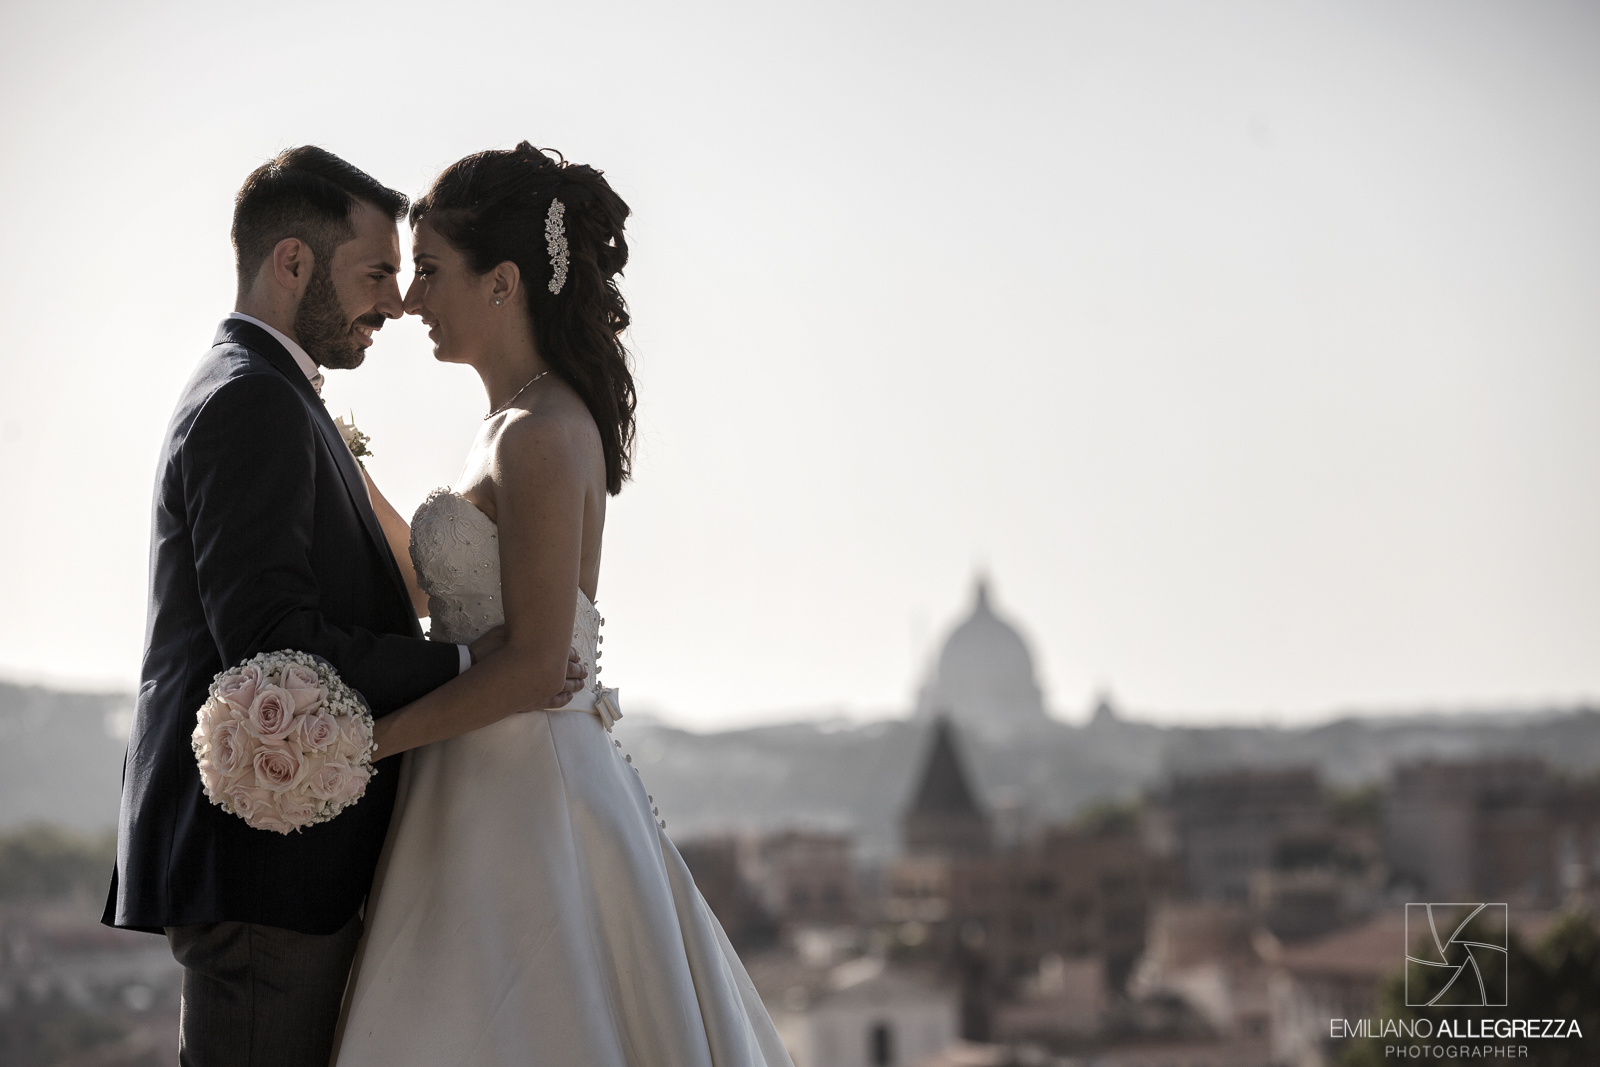 Laboratorio fotografico Allegrezza: il fotografo matrimonio Roma